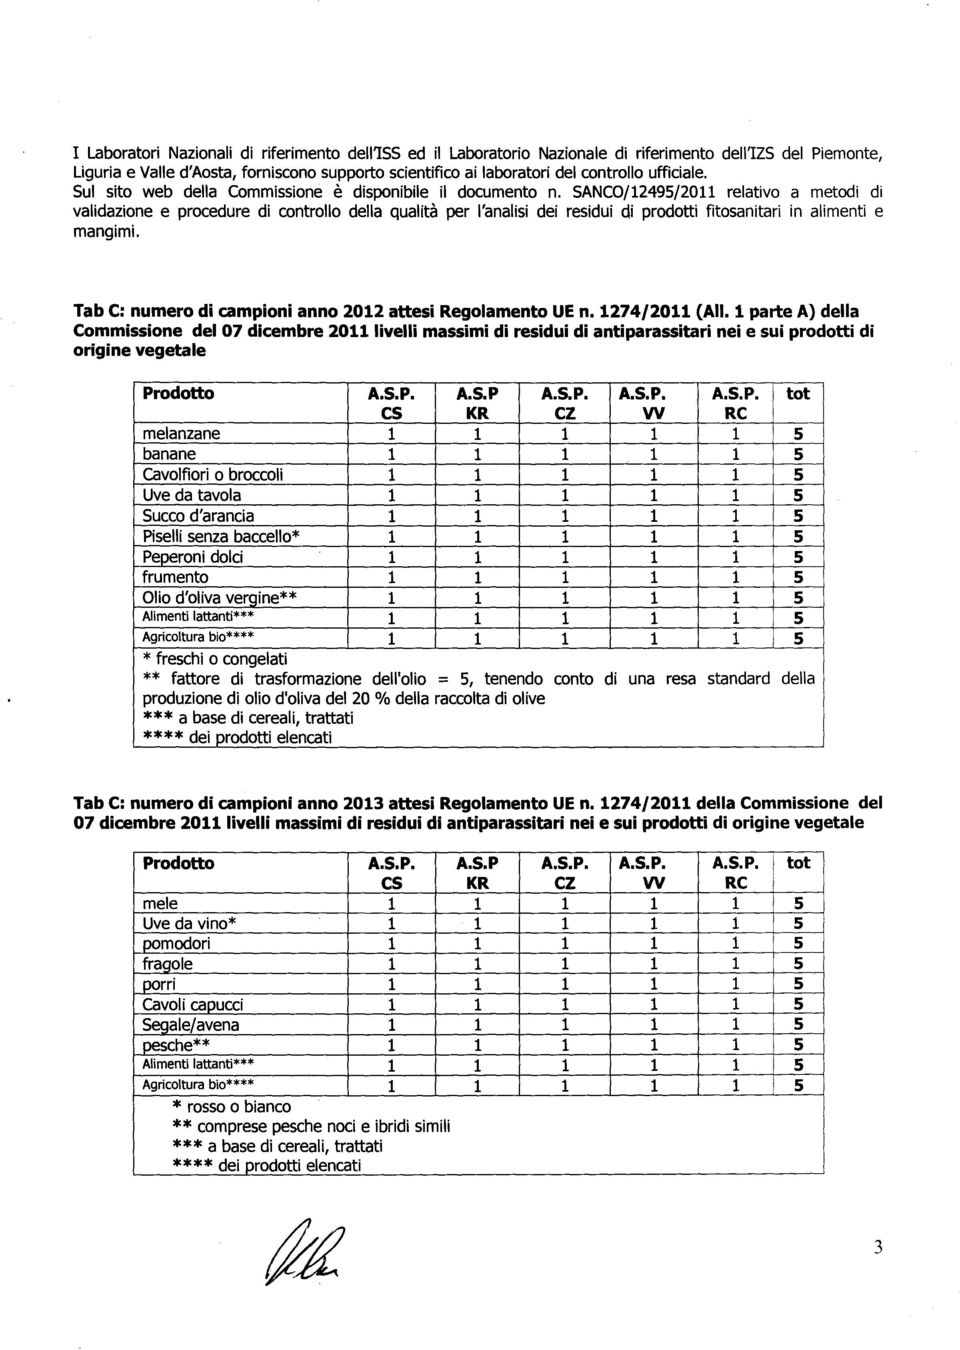 SANCO/12495/2011 relativo a metodi di validazione e procedure di controllo della qualita per I'analisi dei residui eli prodotti fitosanitari in alimenti e mangimi.